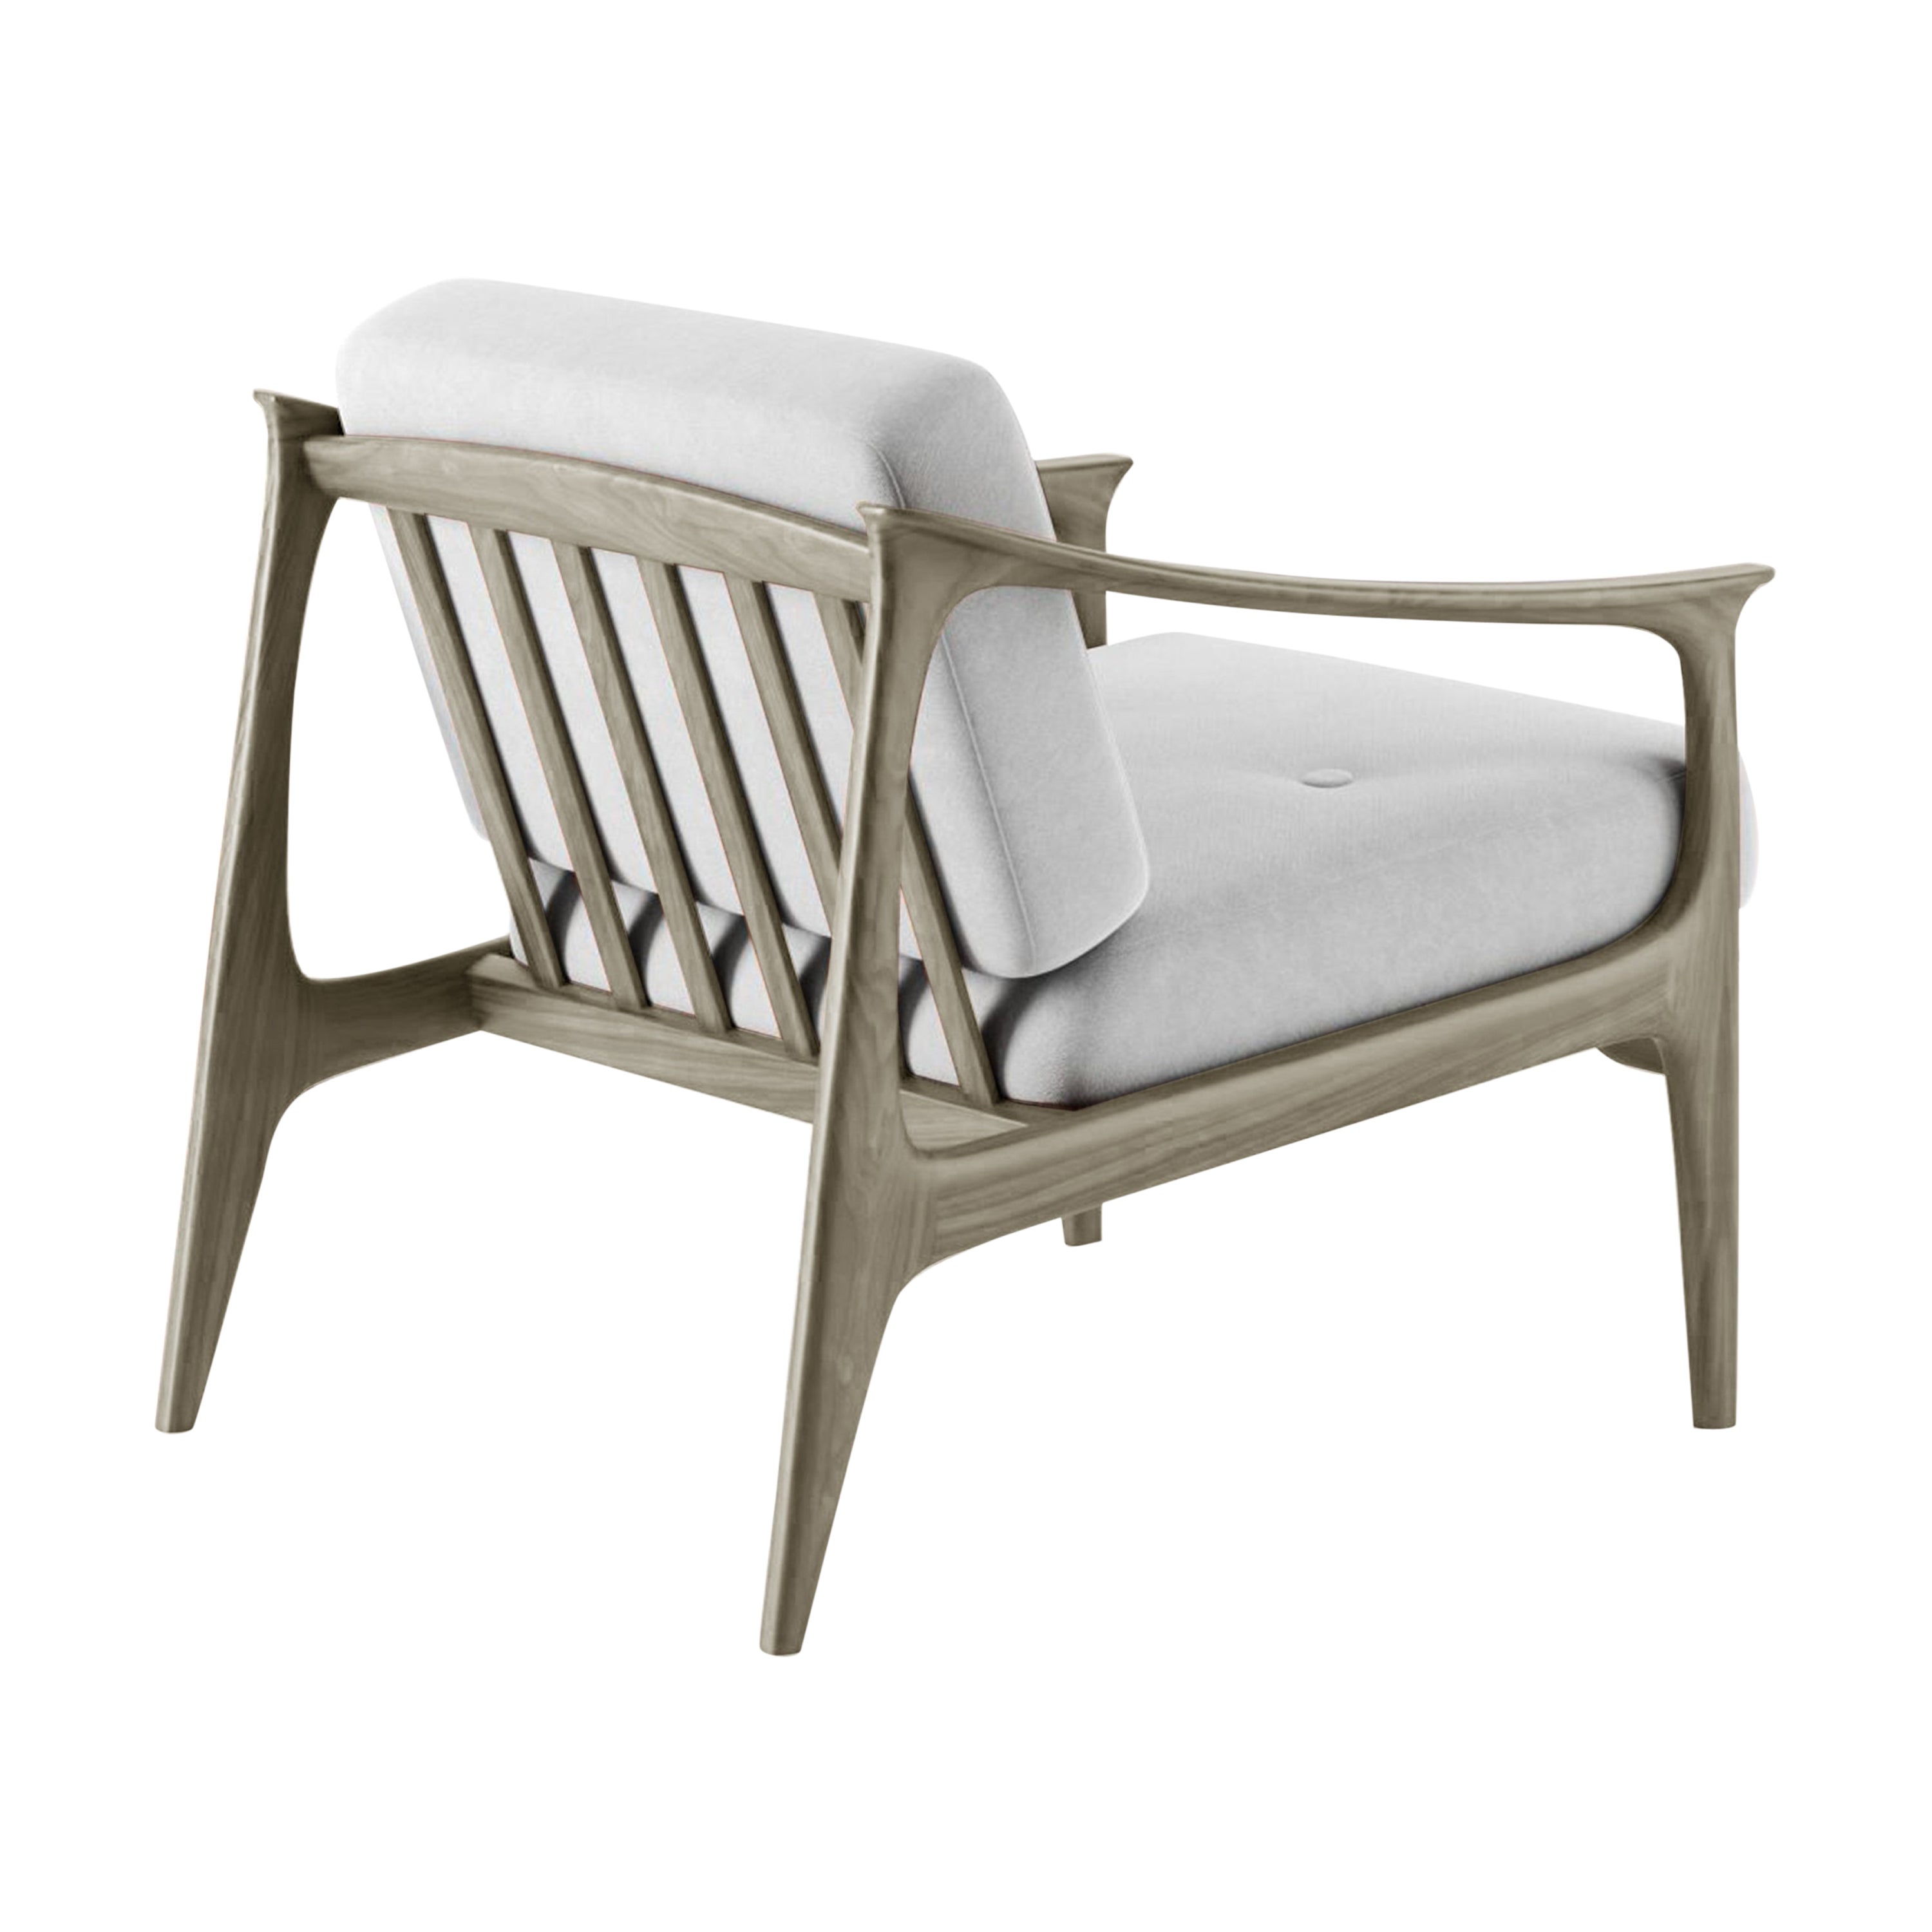 Quiete Sessel aus Massivholz, Nussbaumholz handgefertigt, naturgrau lackiert, zeitgenössisch